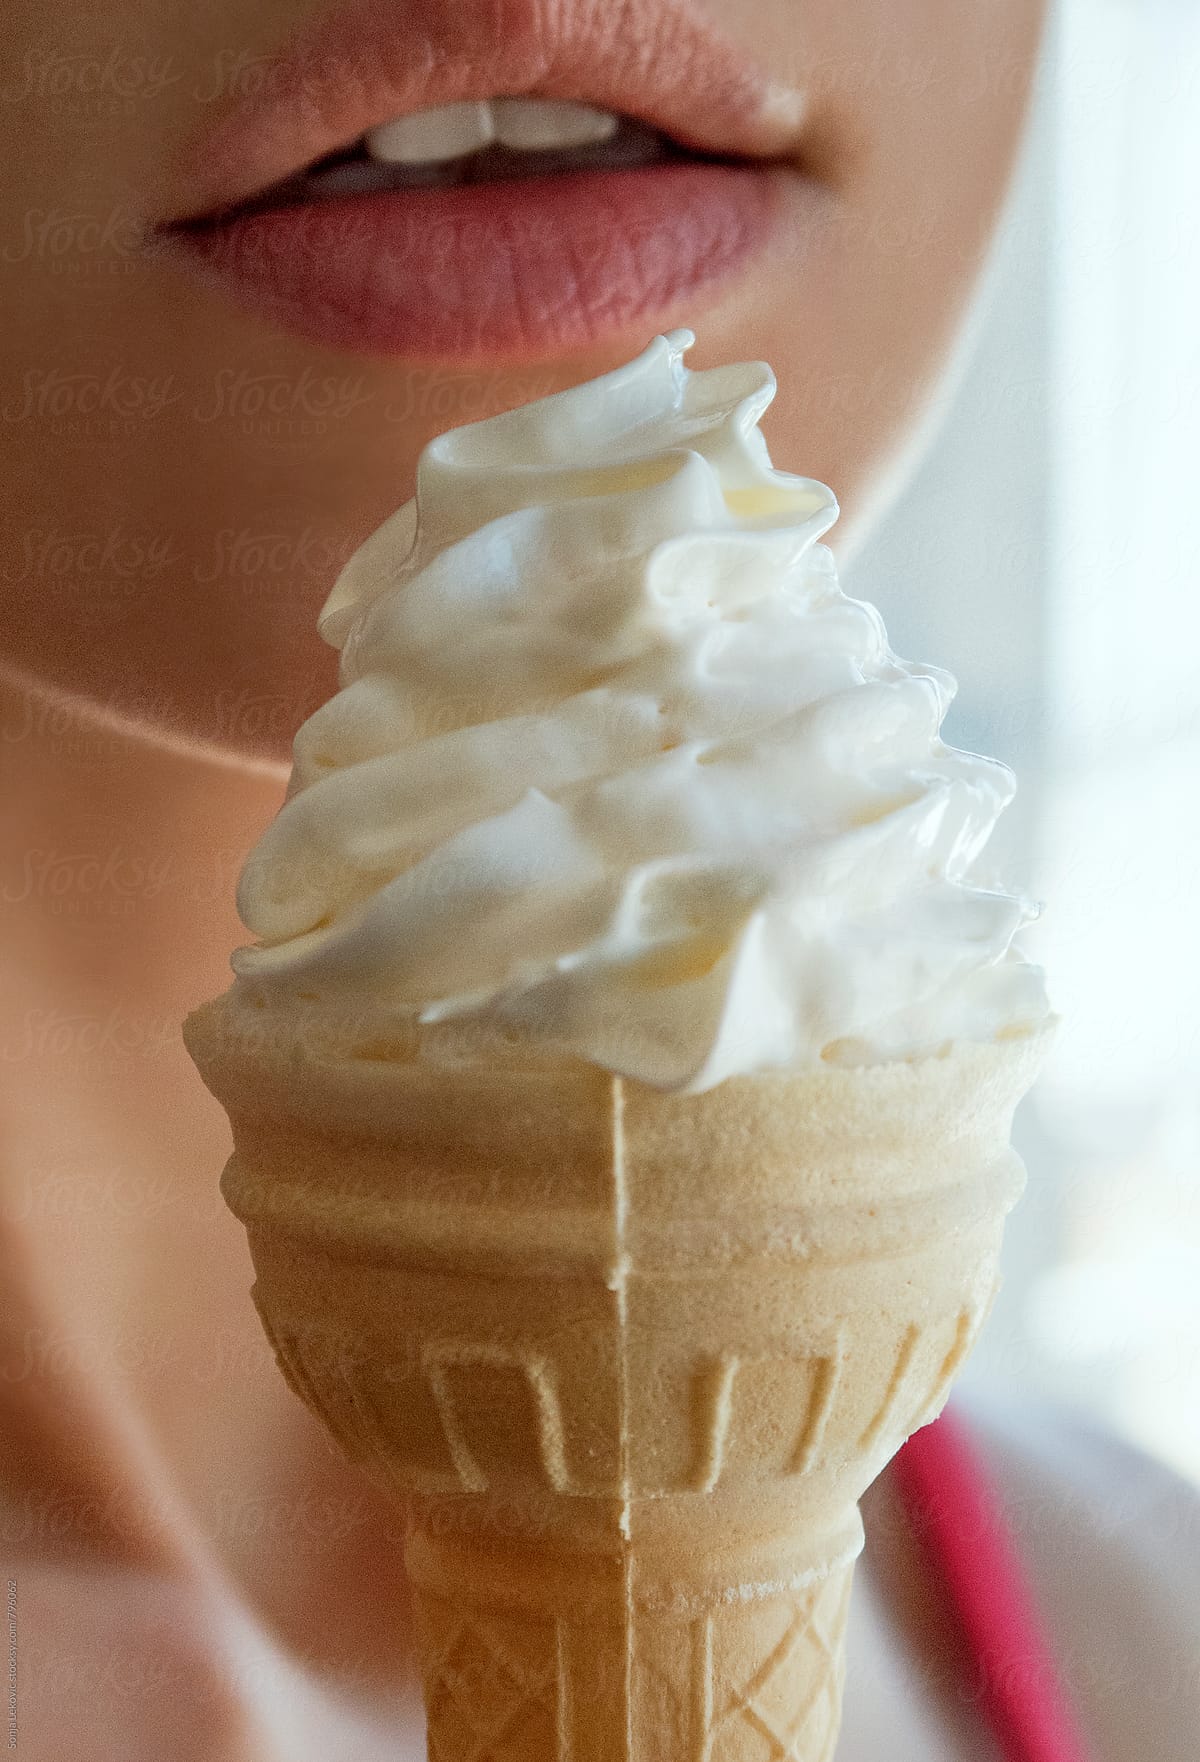 ice cream cone and lips closeup